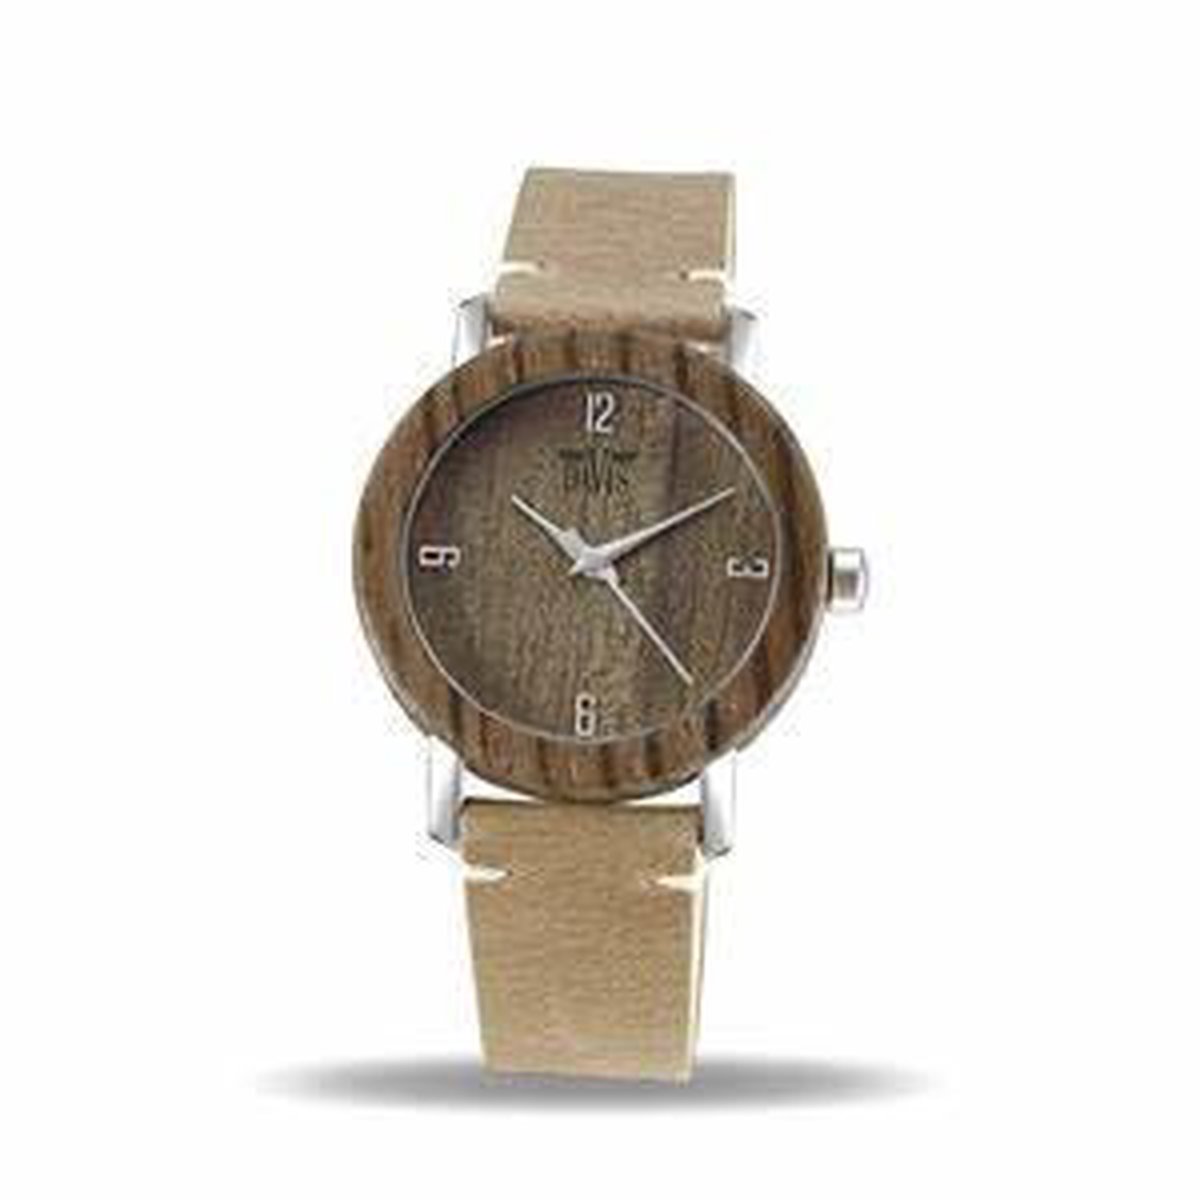 Davis Timer Woodwatch 2231